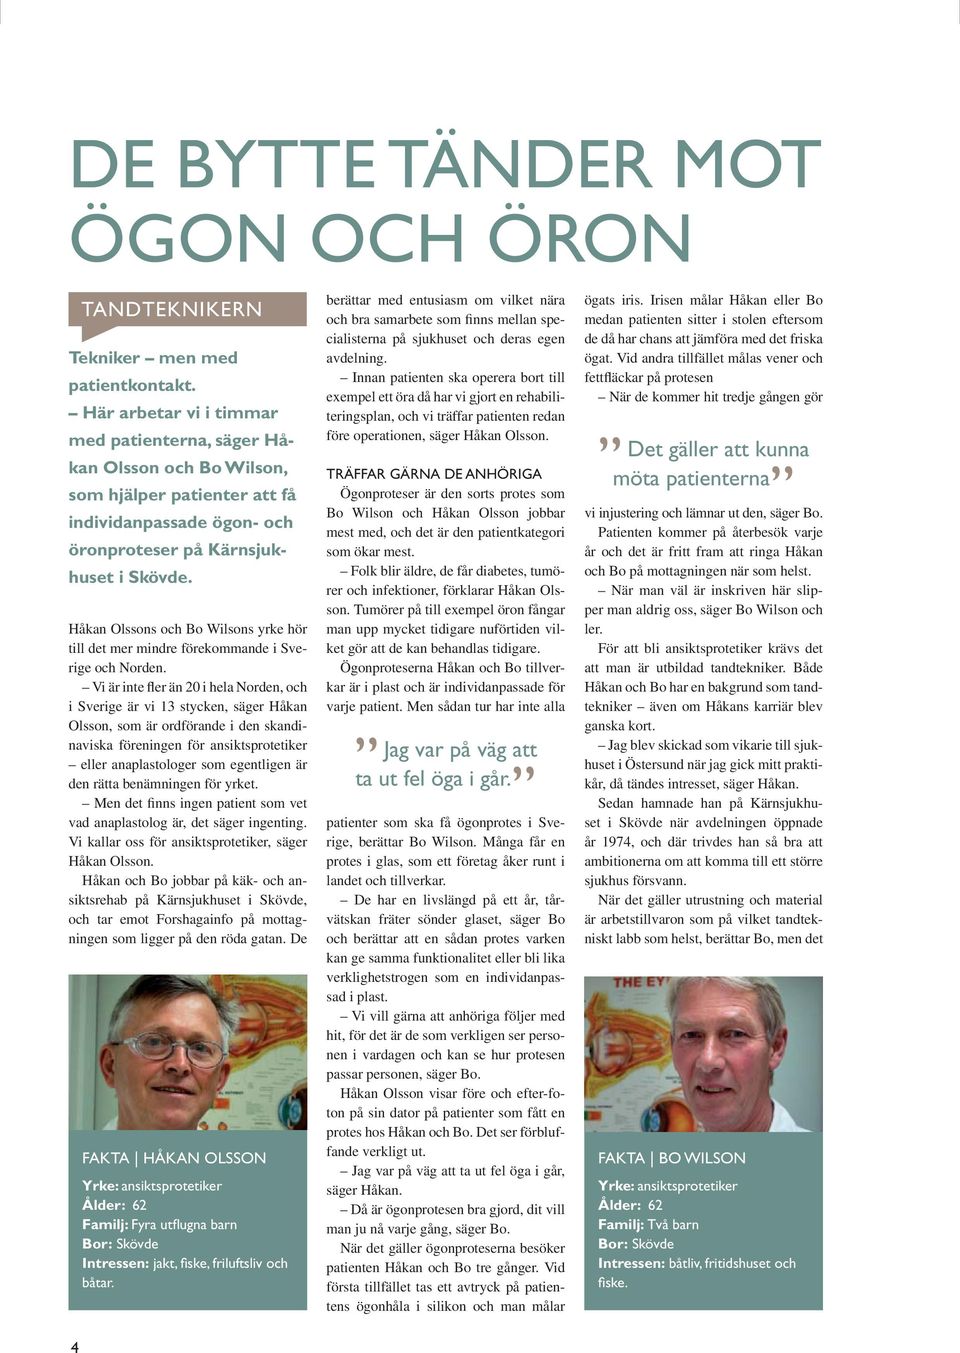 Håkan Olssons och Bo Wilsons yrke hör till det mer mindre förekommande i Sverige och Norden.